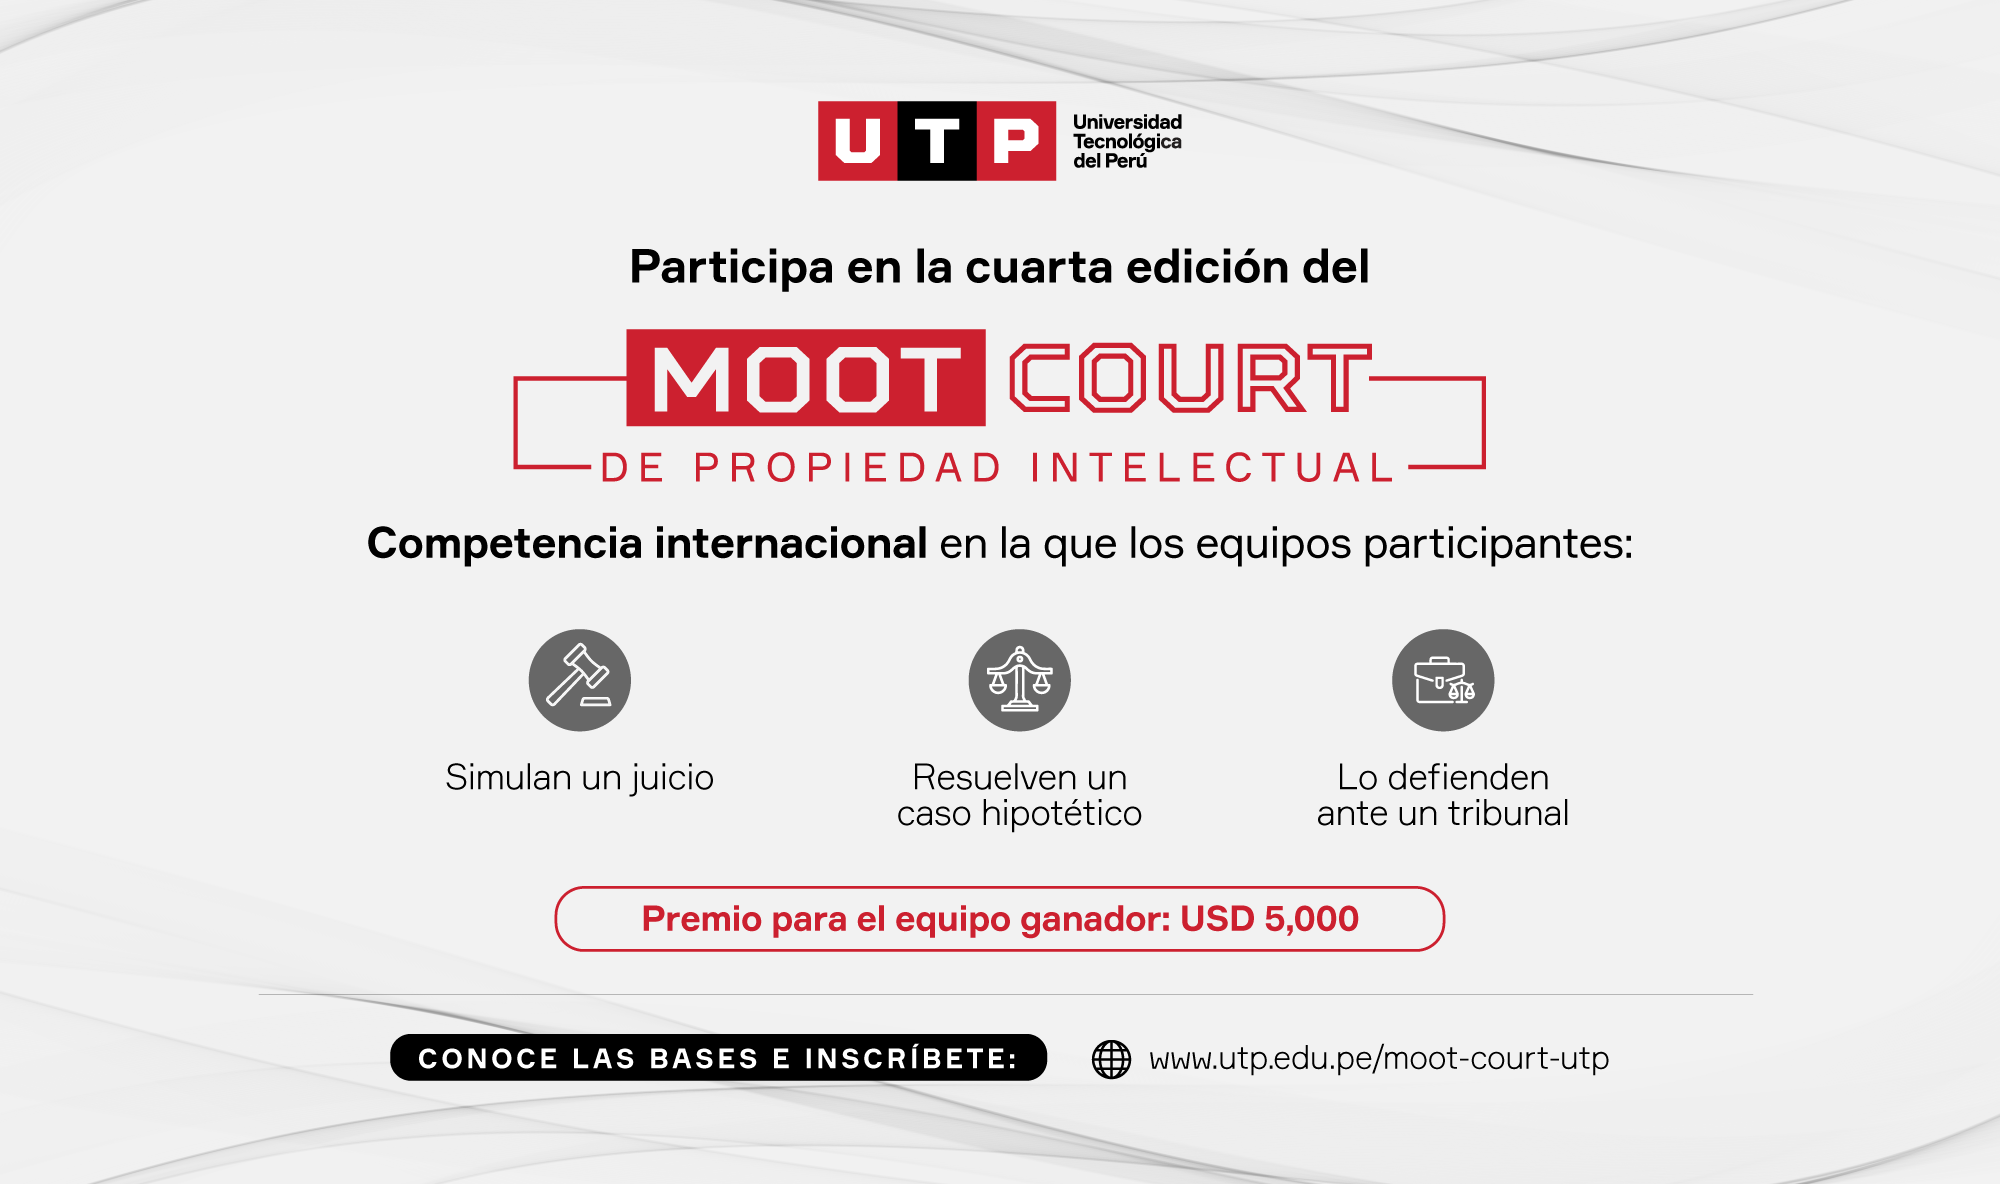 La UTP organiza la cuarta edición del Moot Court de Propiedad Intelectual